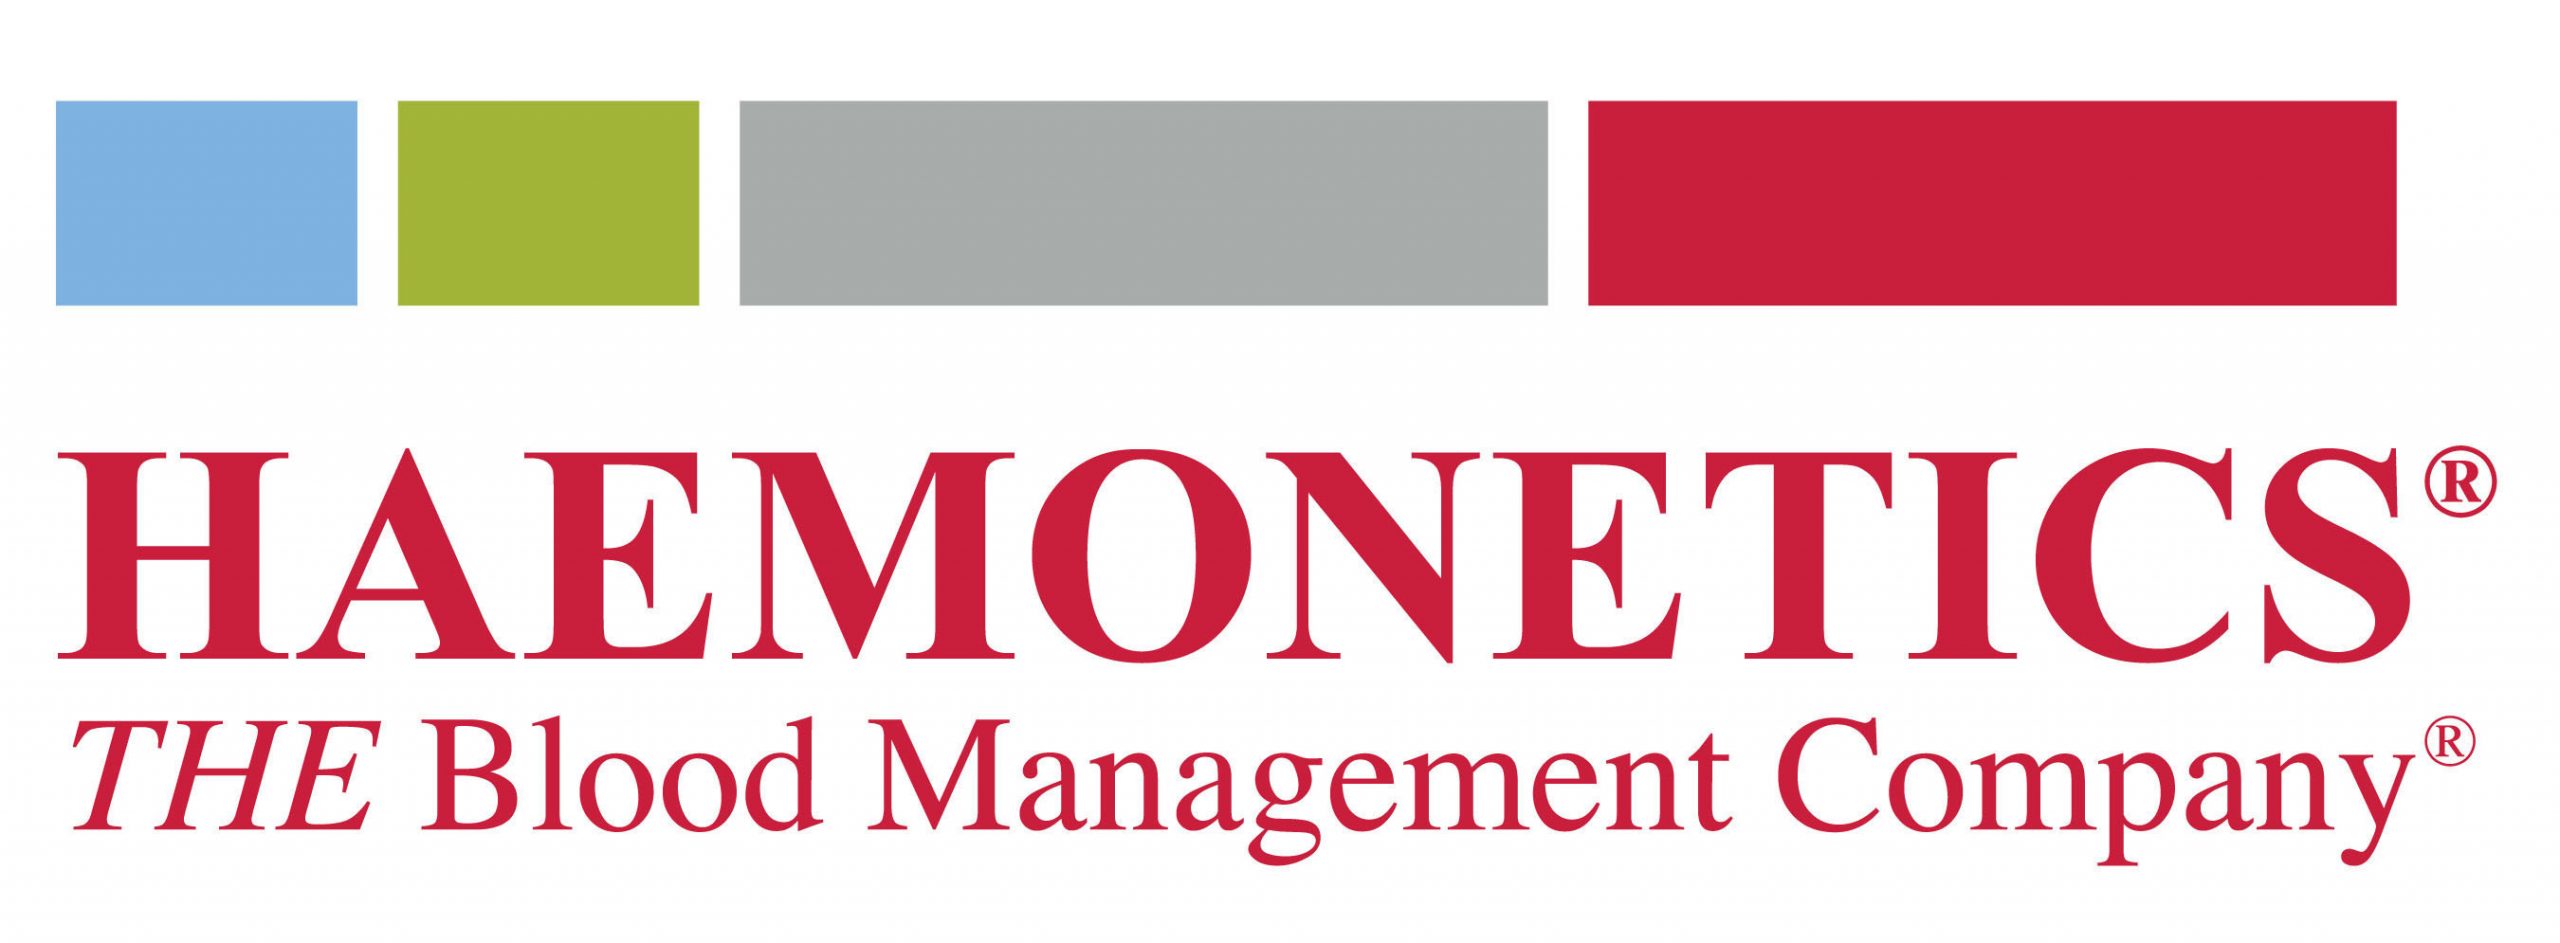 Haemonetics Company Logo